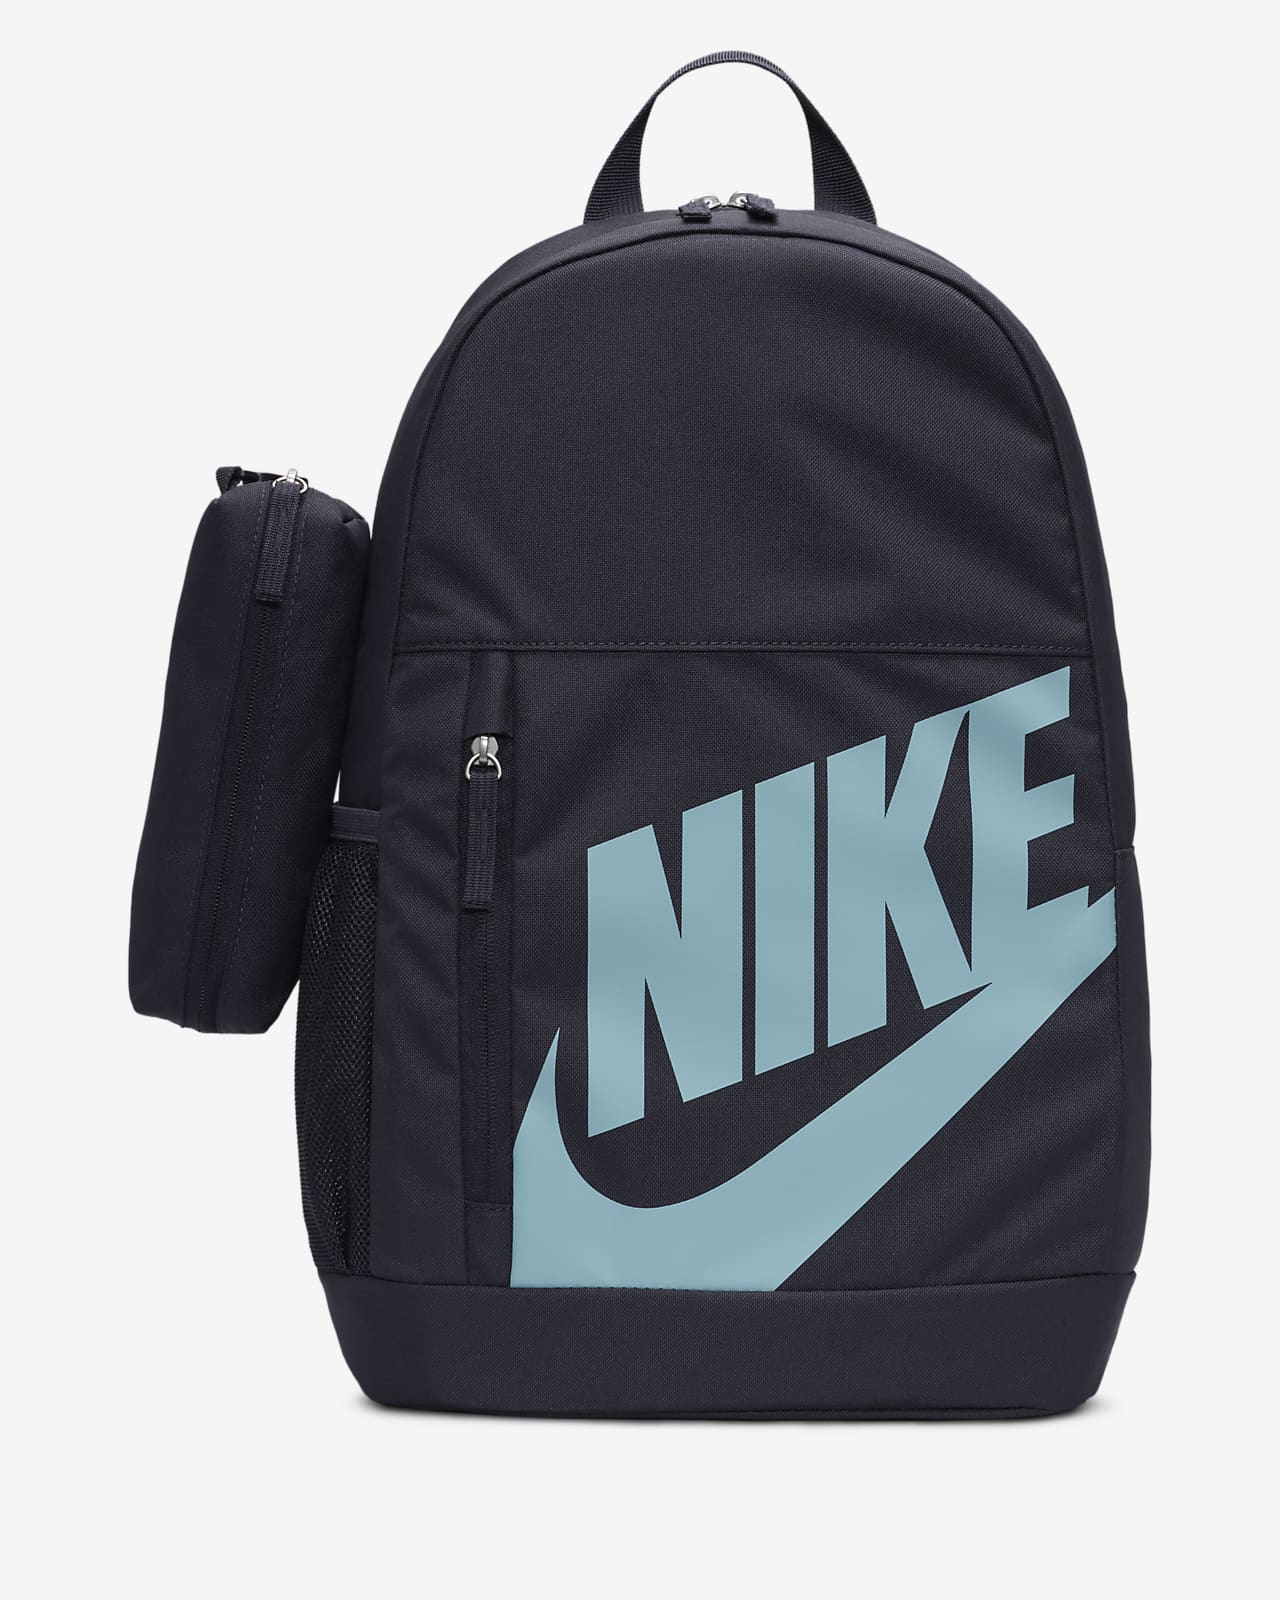 Nike Premium Cross-Body Bag (4L). Nike PH-cokhiquangminh.vn